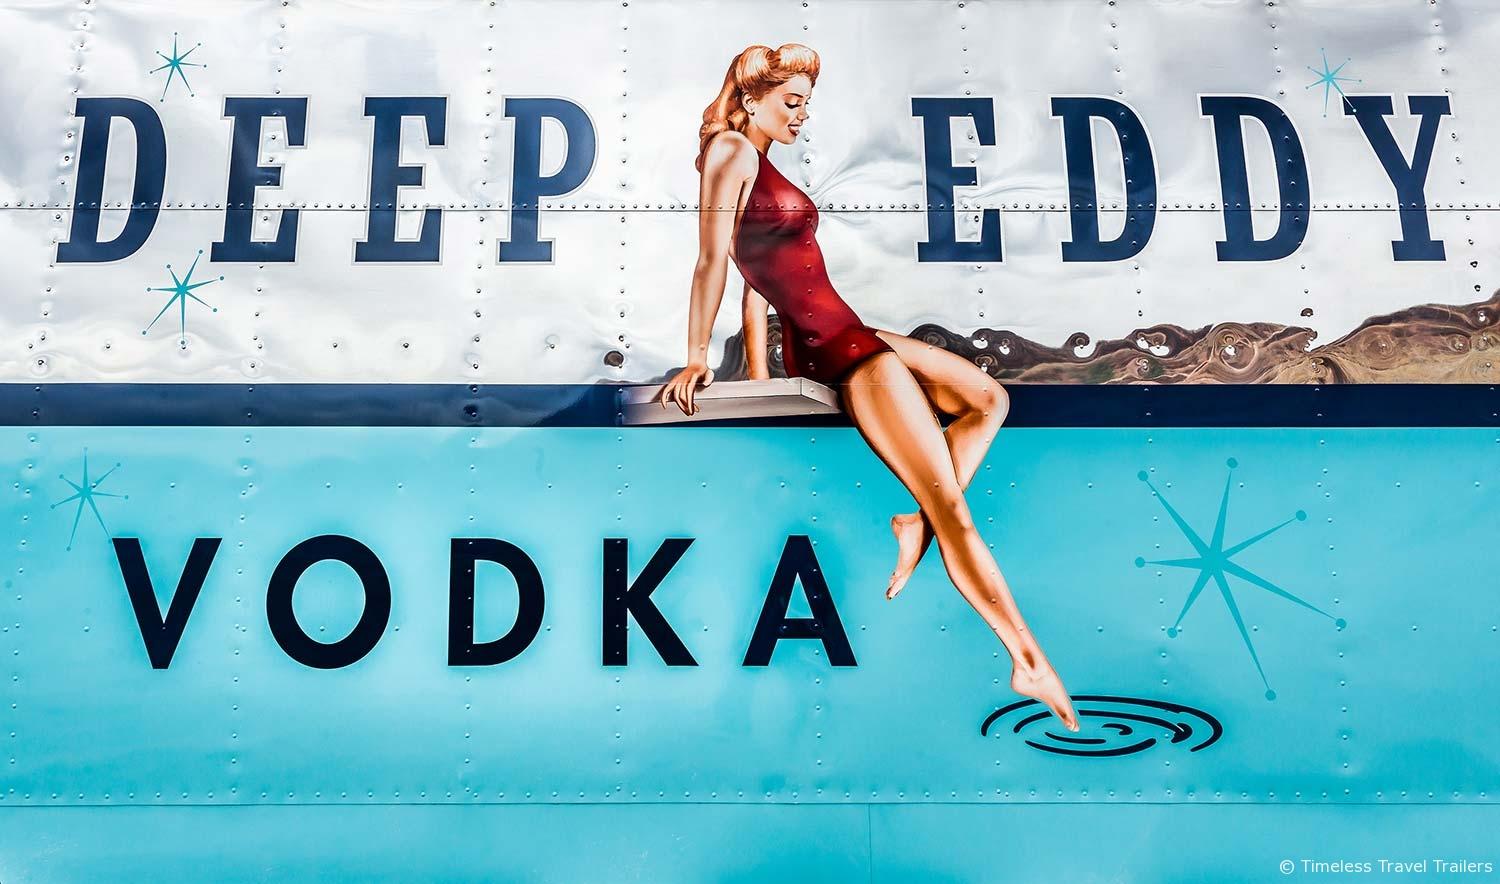 Deep Eddy Logo - Deep Eddy Vodka - Custom Spartan Trailer by Timeless Travel Trailers